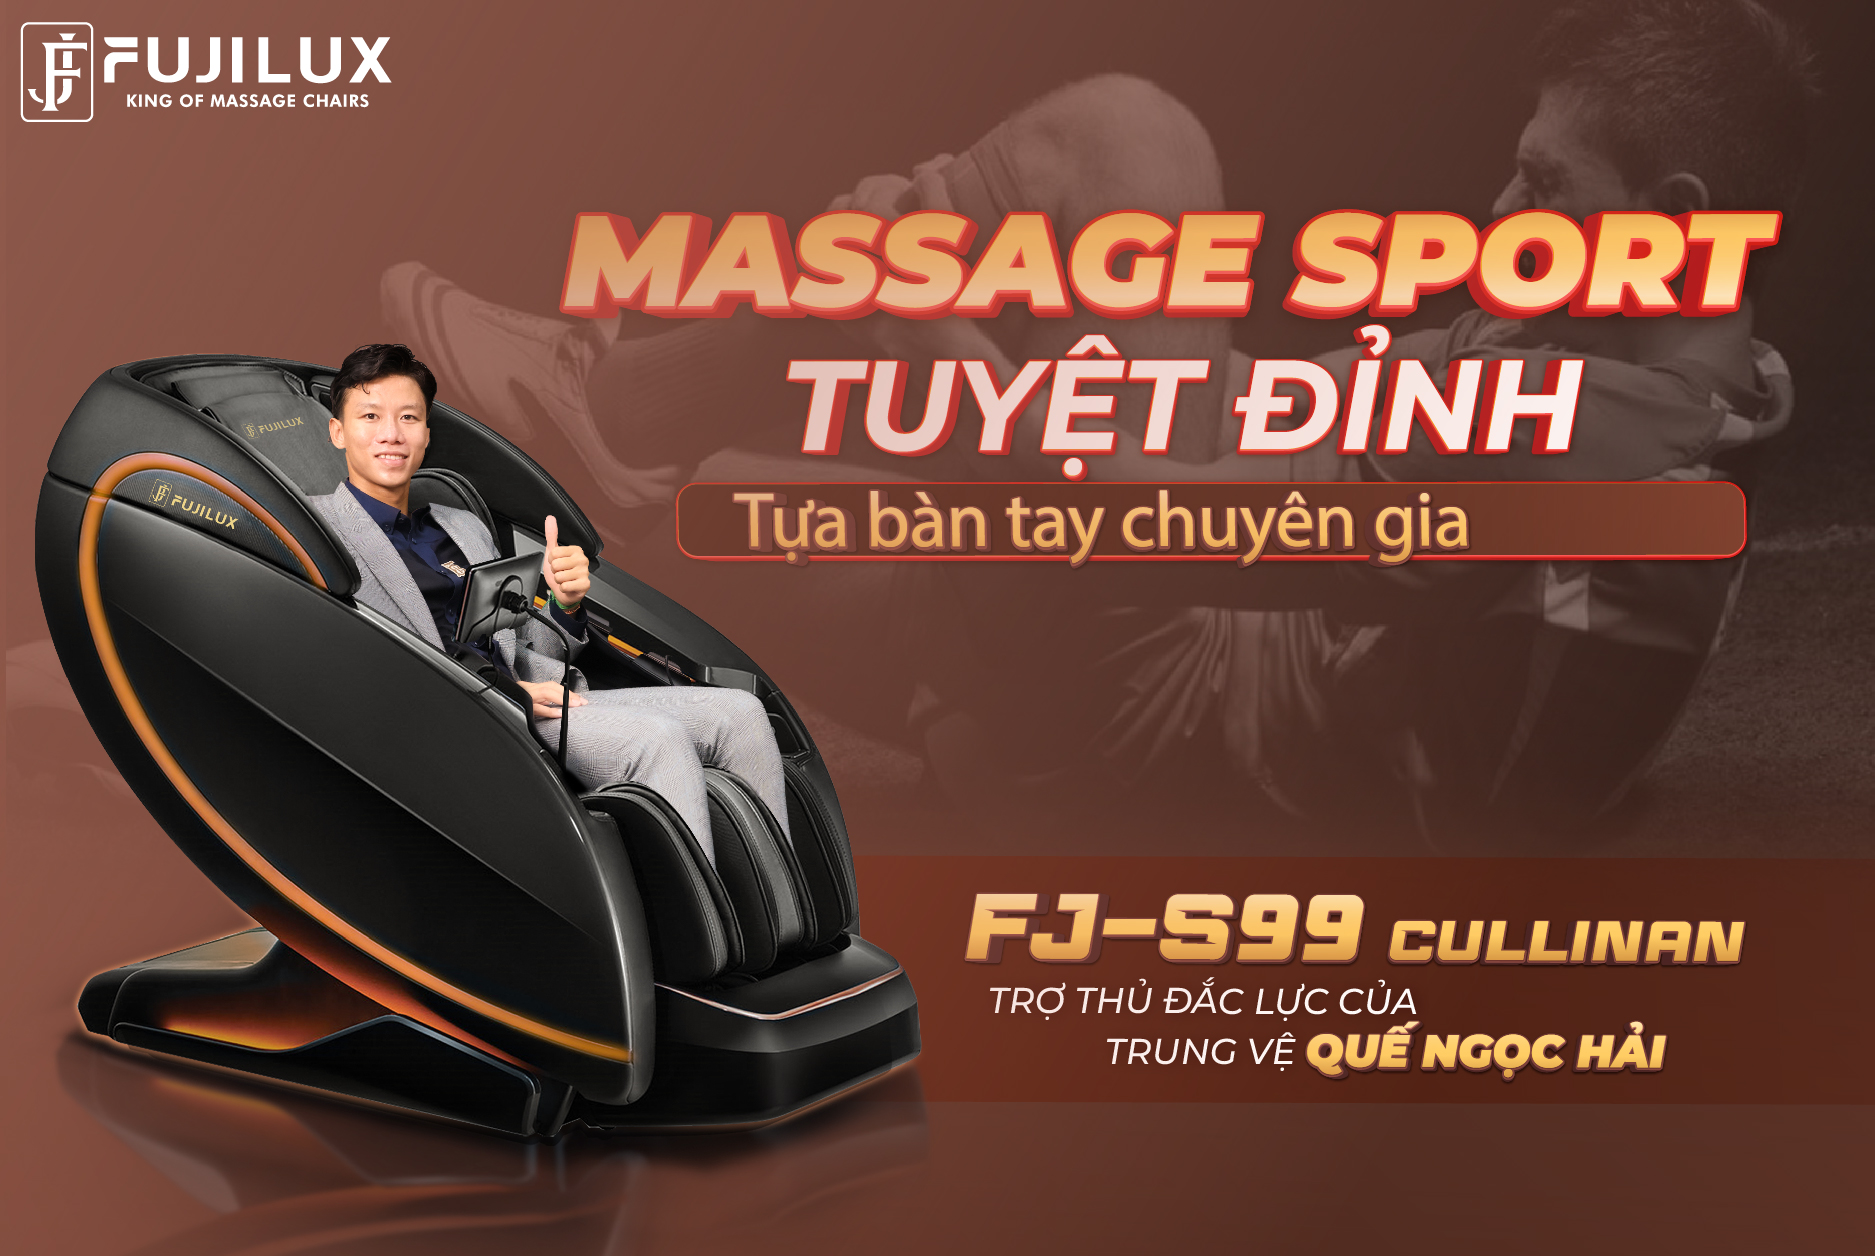 Ghế massage Fuji Luxury được các cầu thủ tin dùng